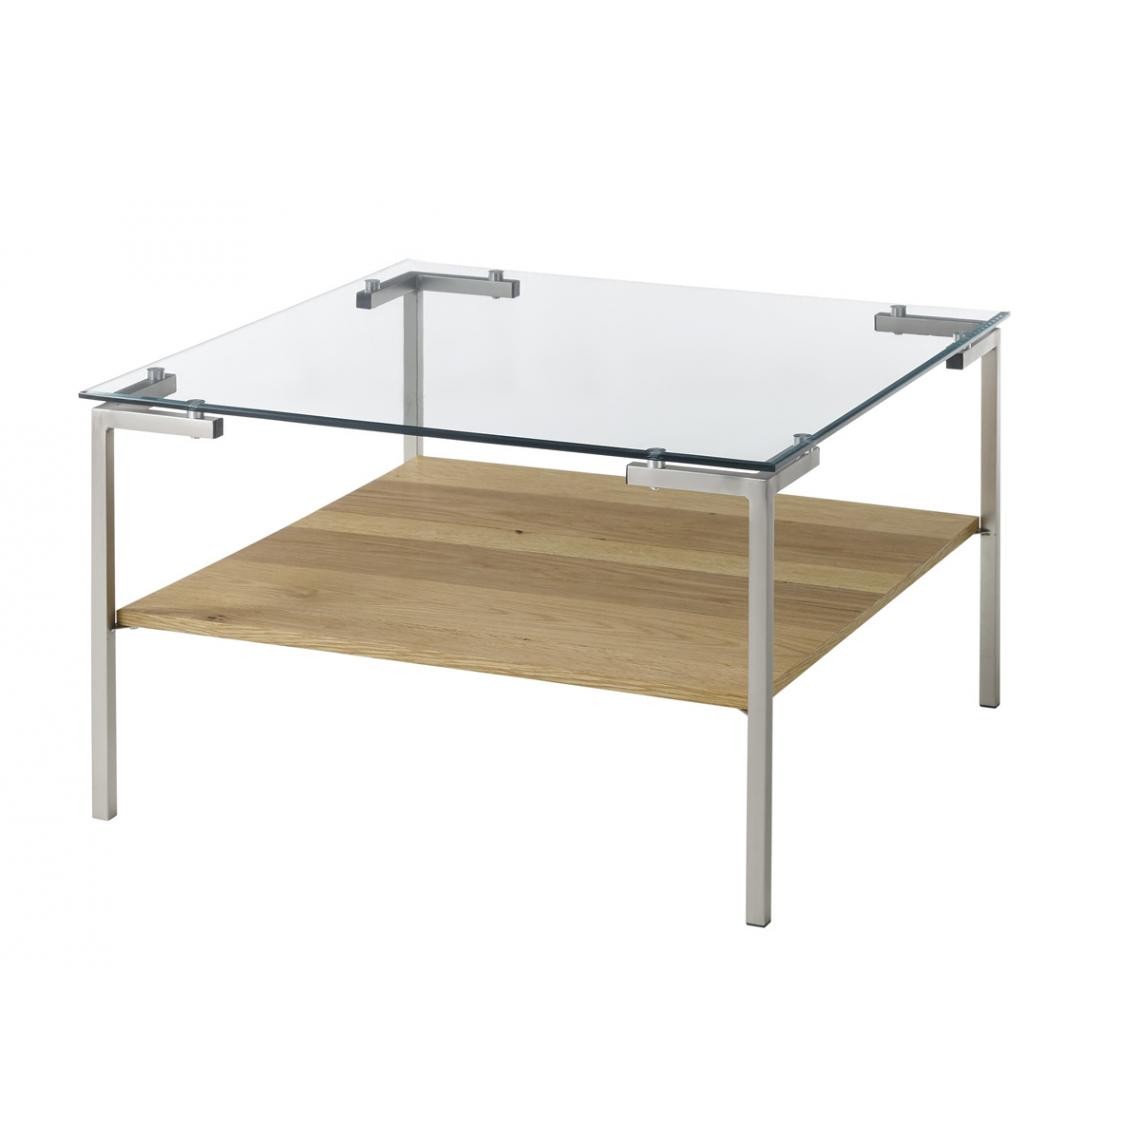 Pegane - Table basse coloris chêne en verre / bois - Longueur 65 x hauteur 46 x profondeur 65 cm - Tables basses